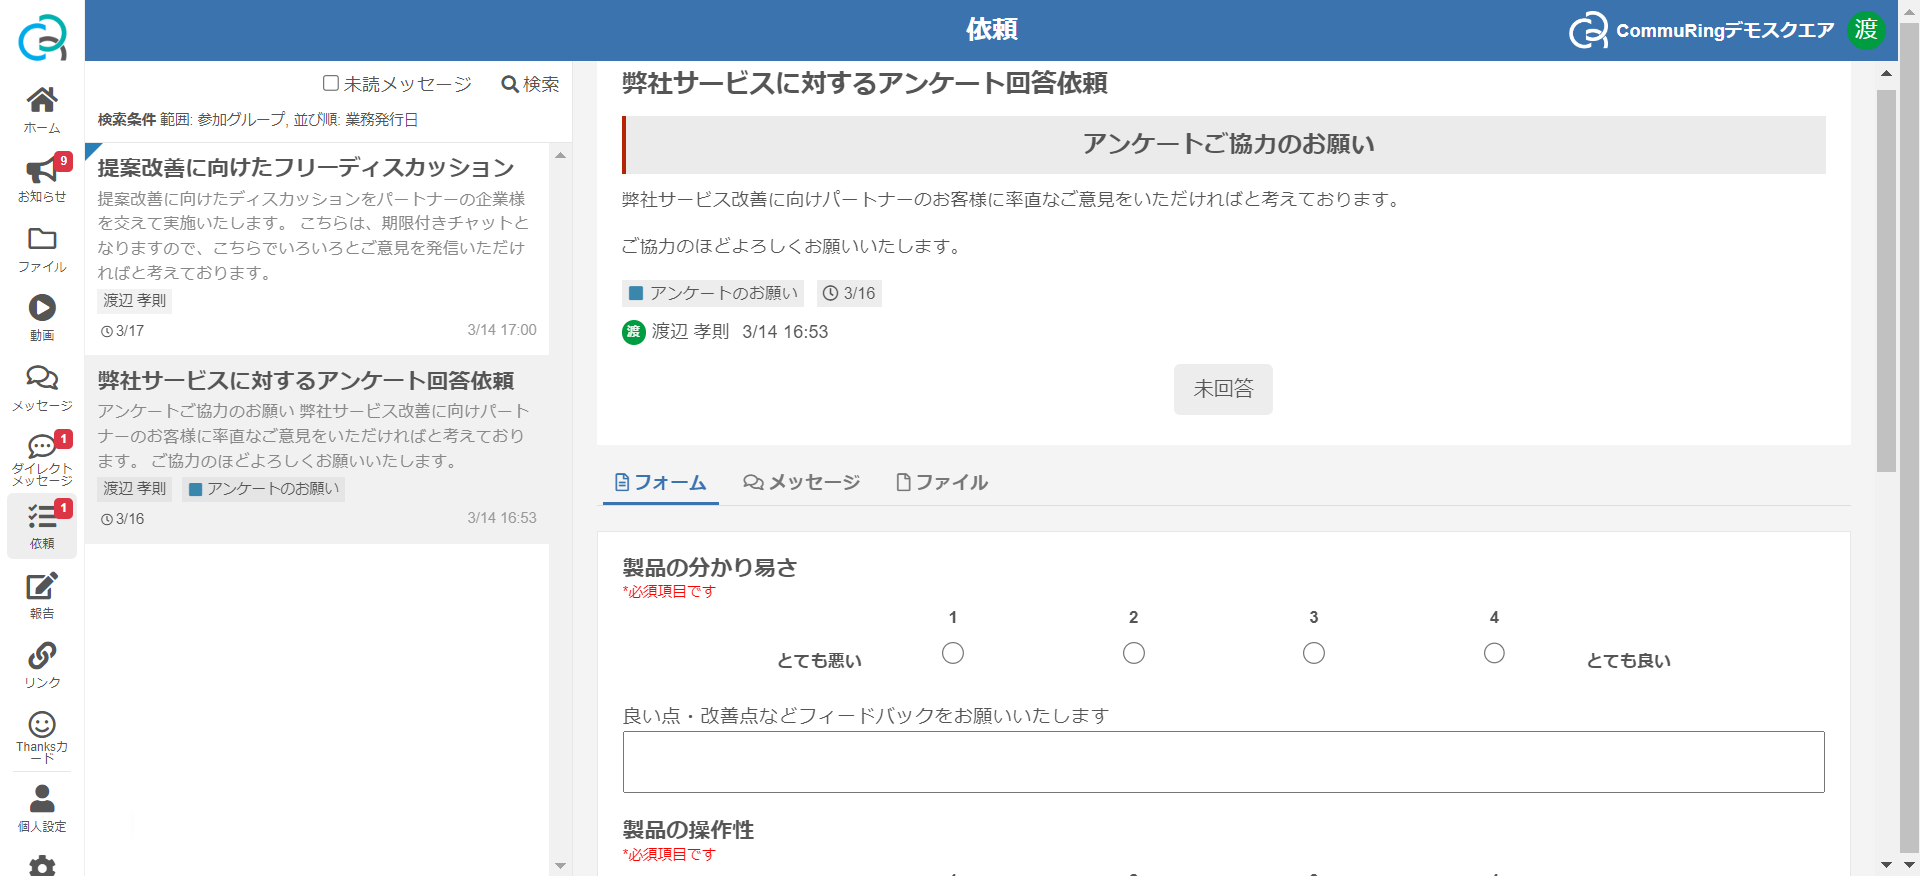 機能_お知らせ_利用者画面.png